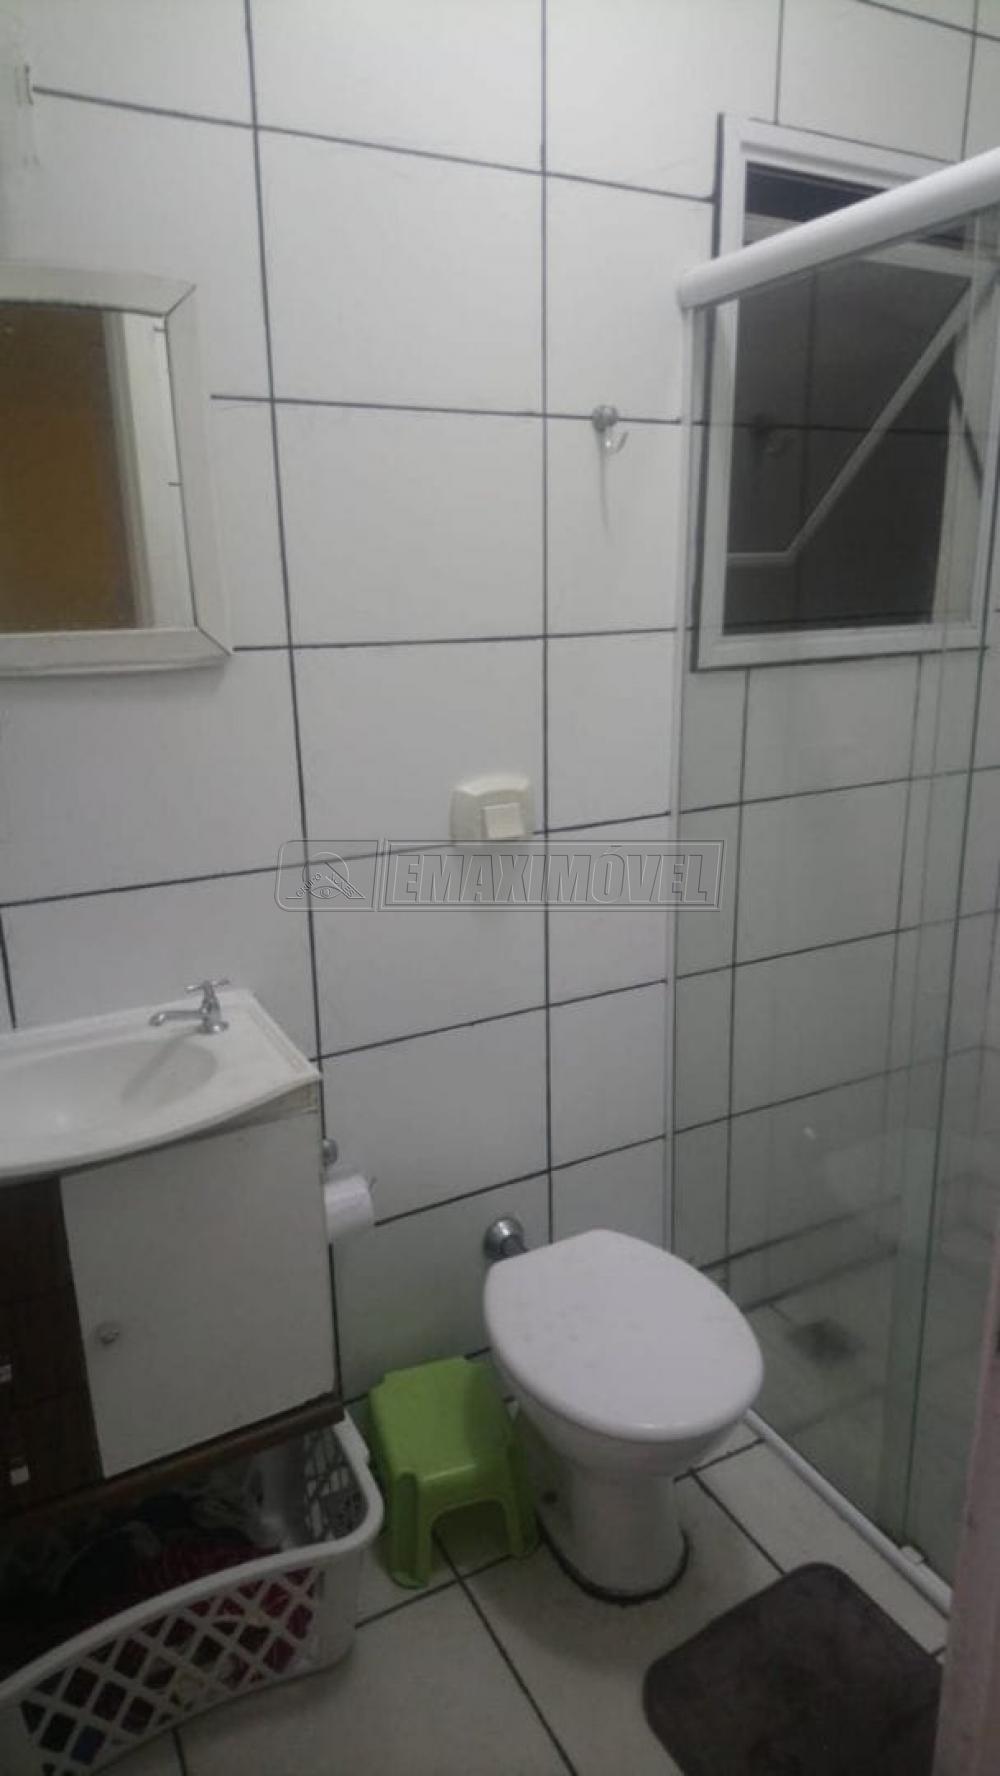 Comprar Casa / em Condomínios em Sorocaba R$ 225.000,00 - Foto 5